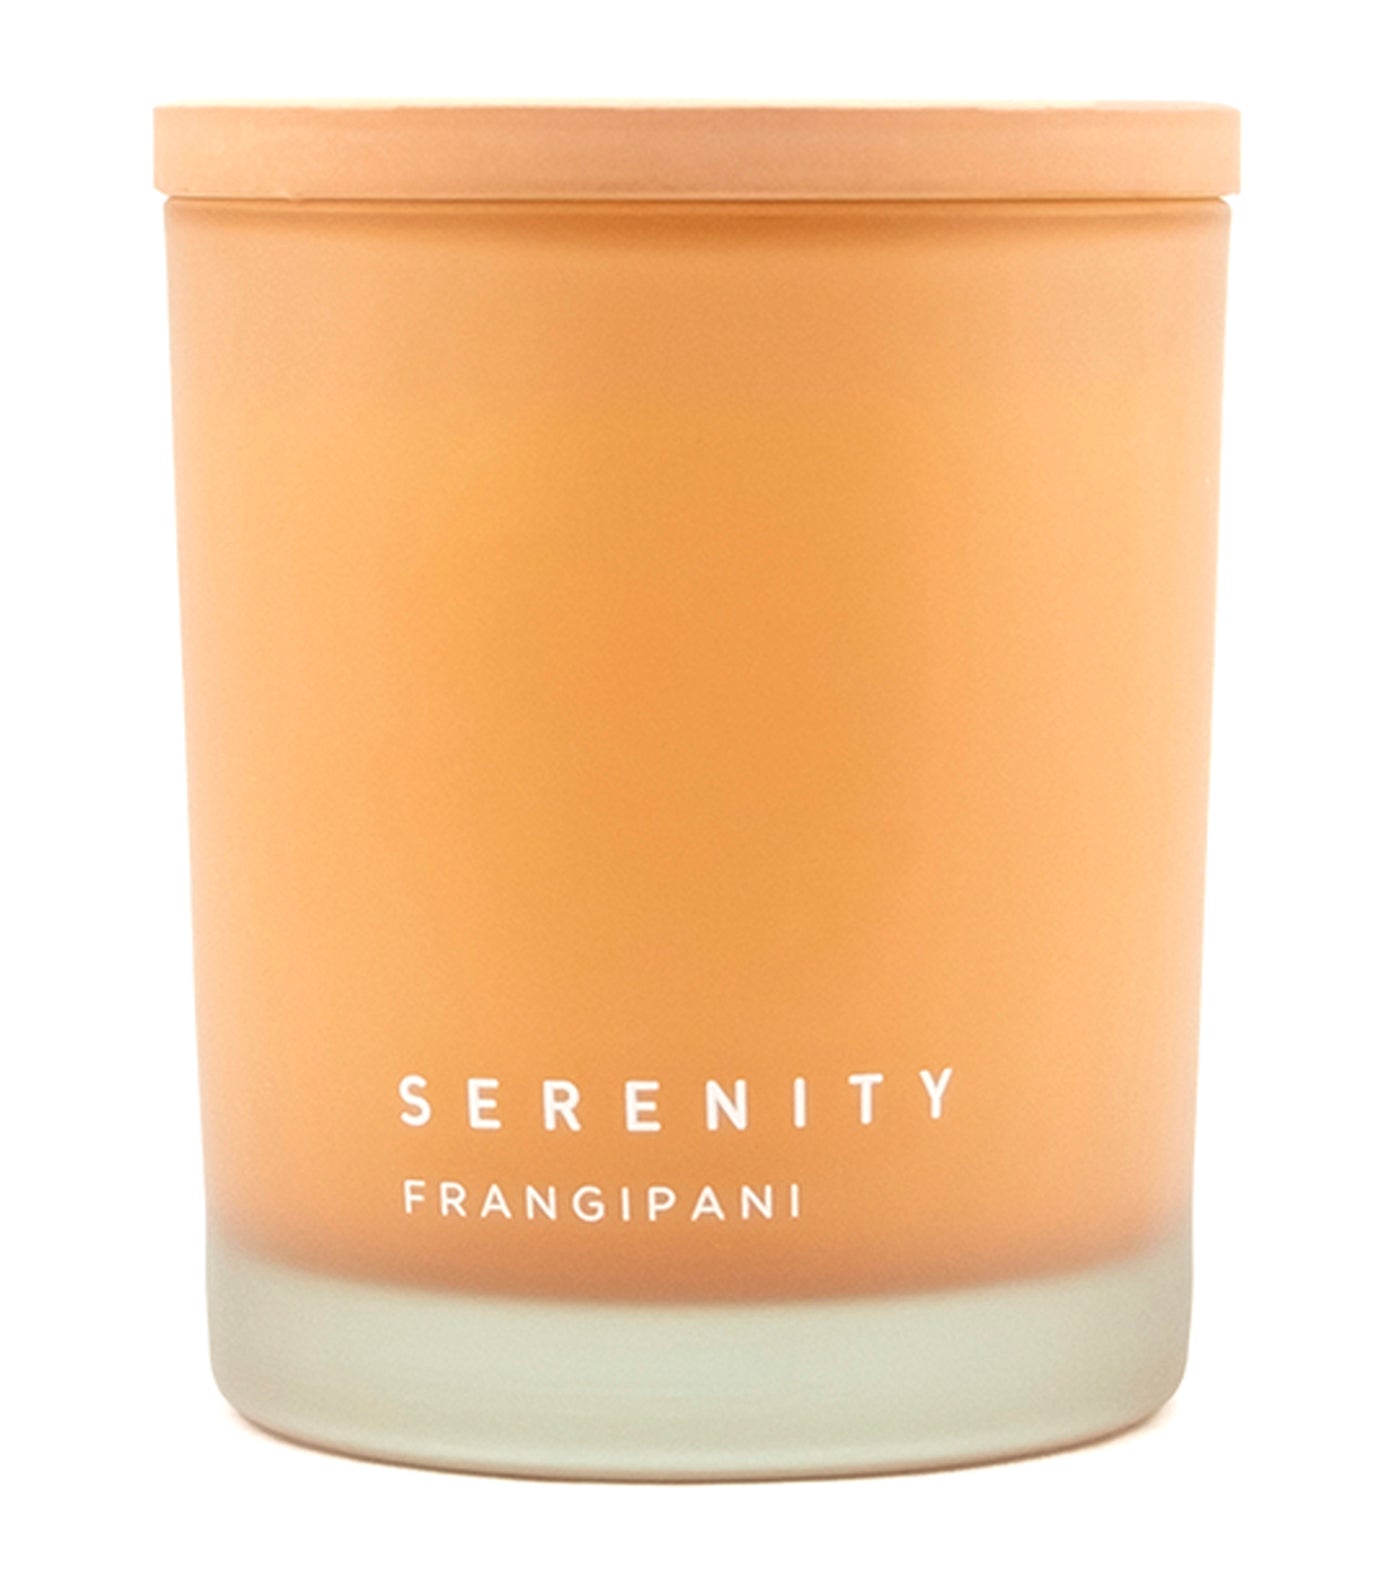 serenity frangipani soy wax candle